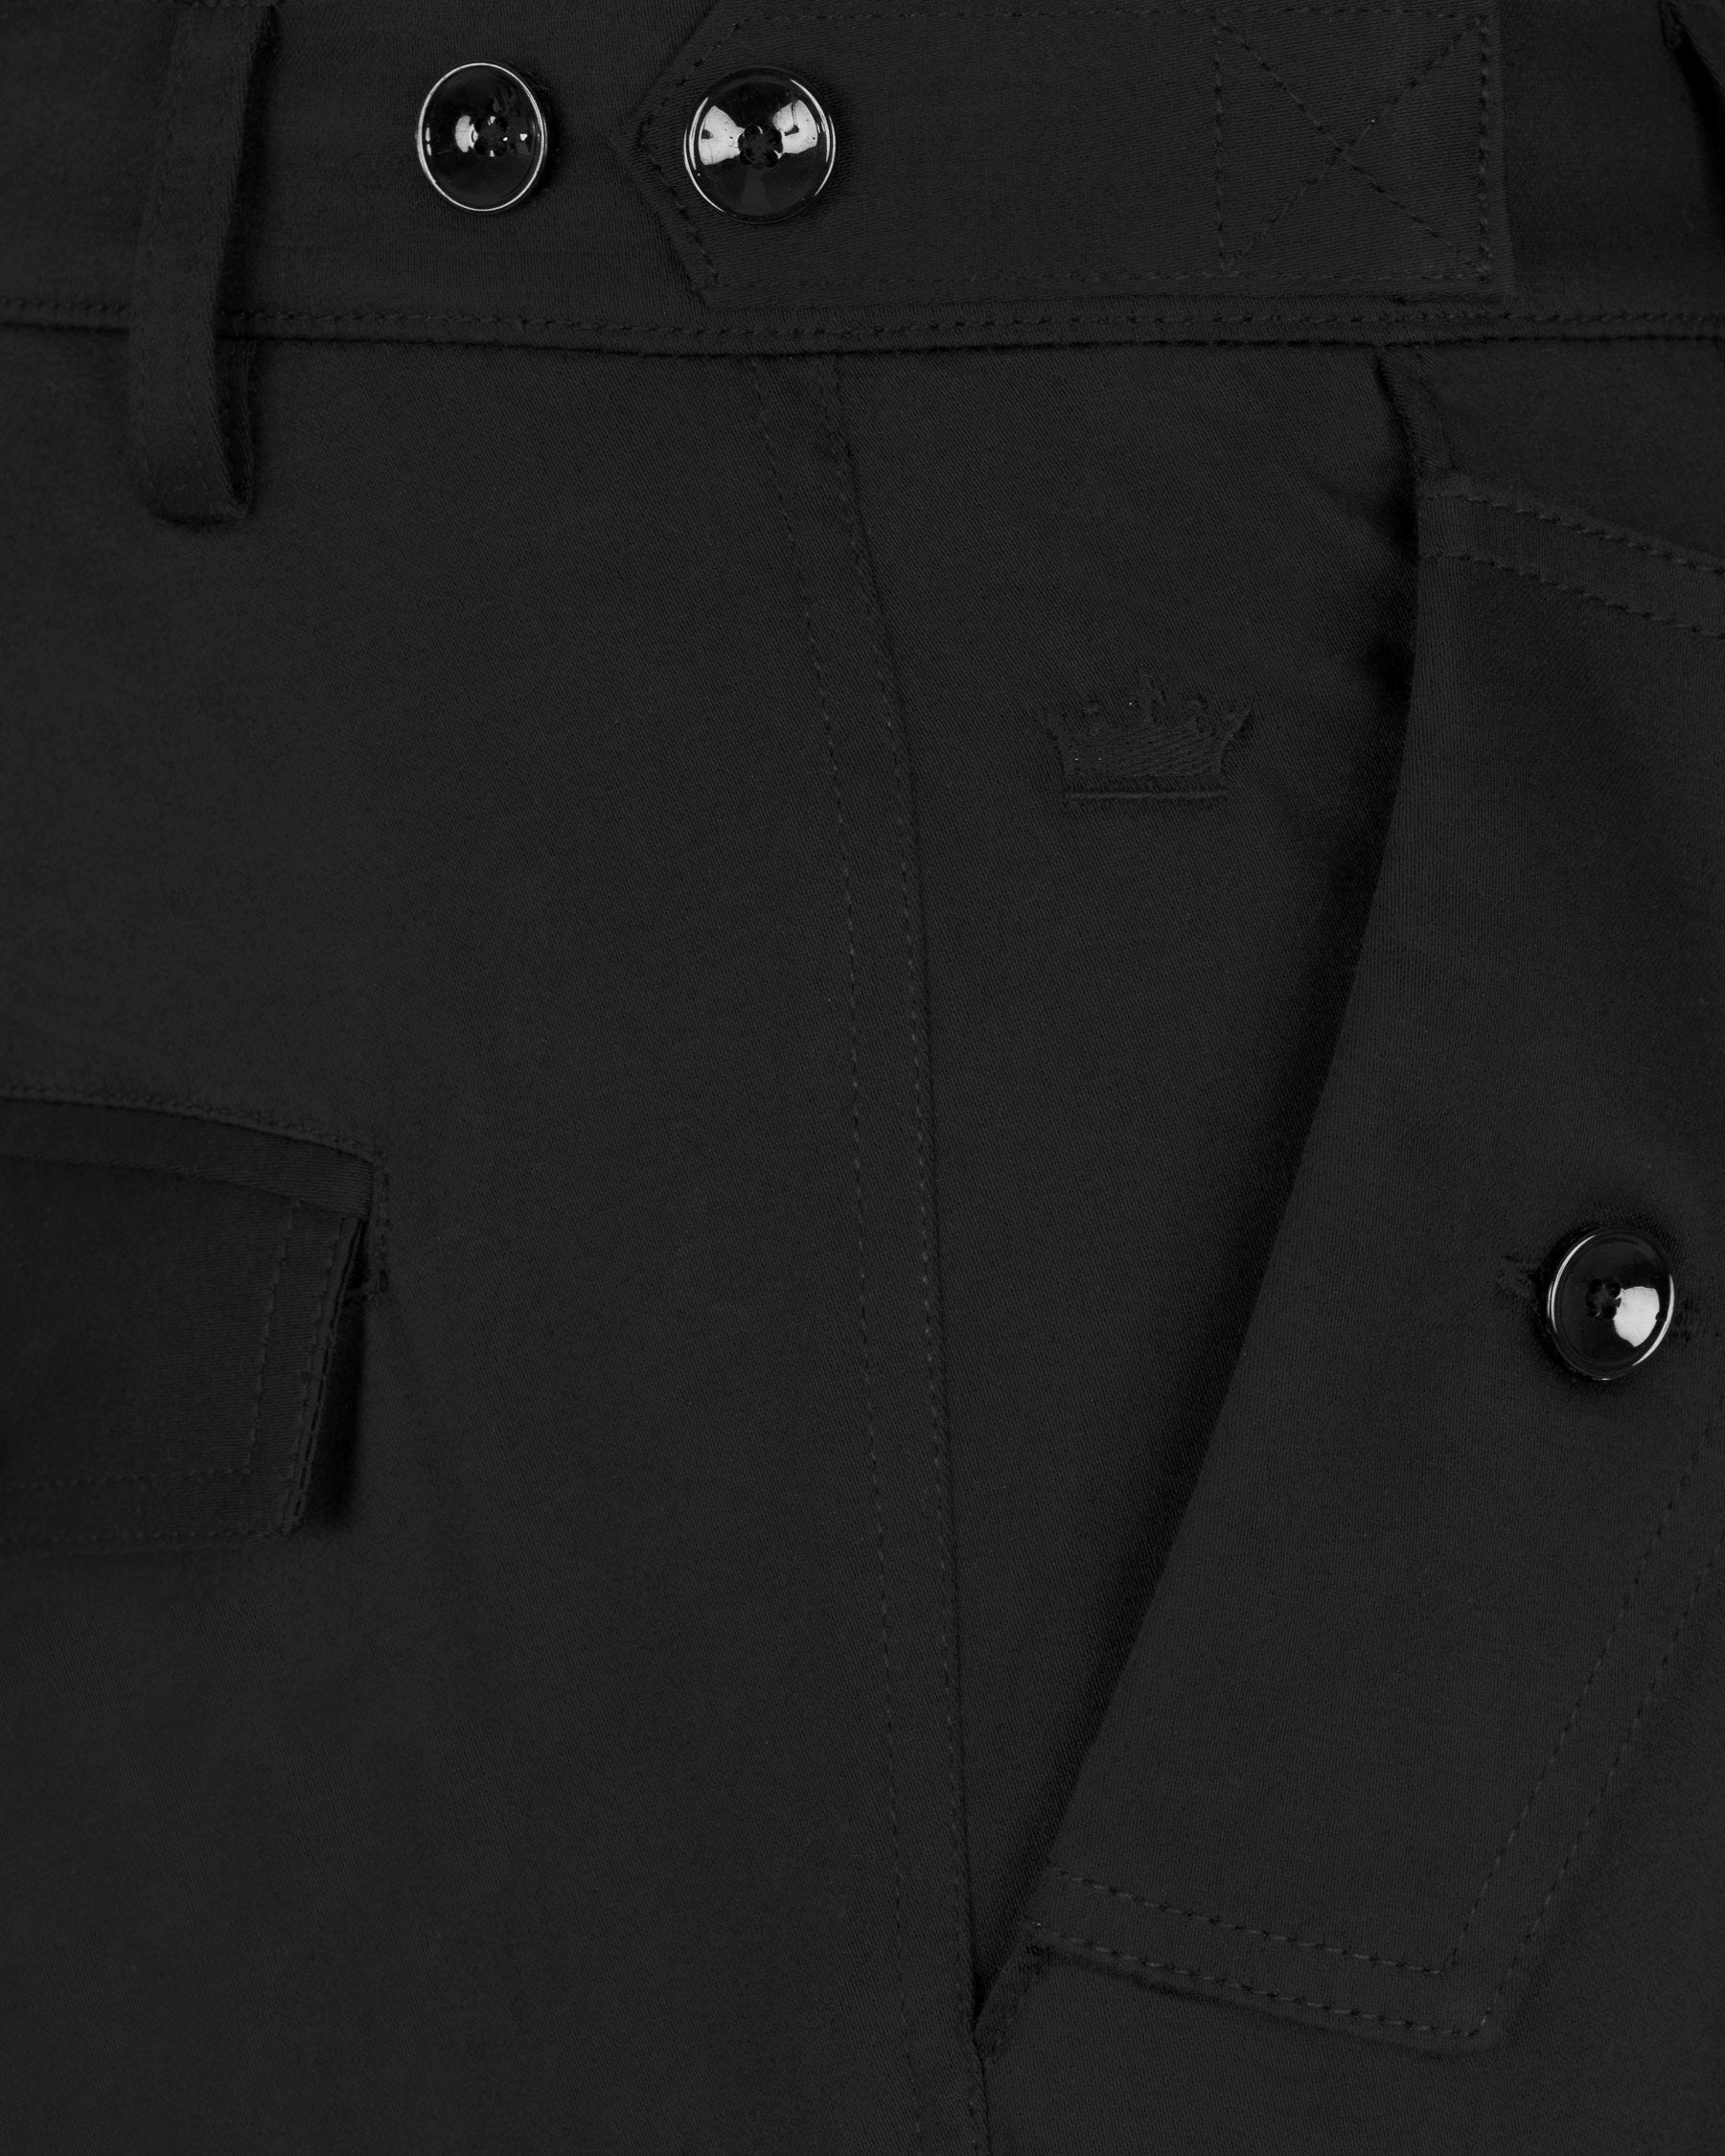 Jade Black Super Soft Premium Cotton Cargo Pant